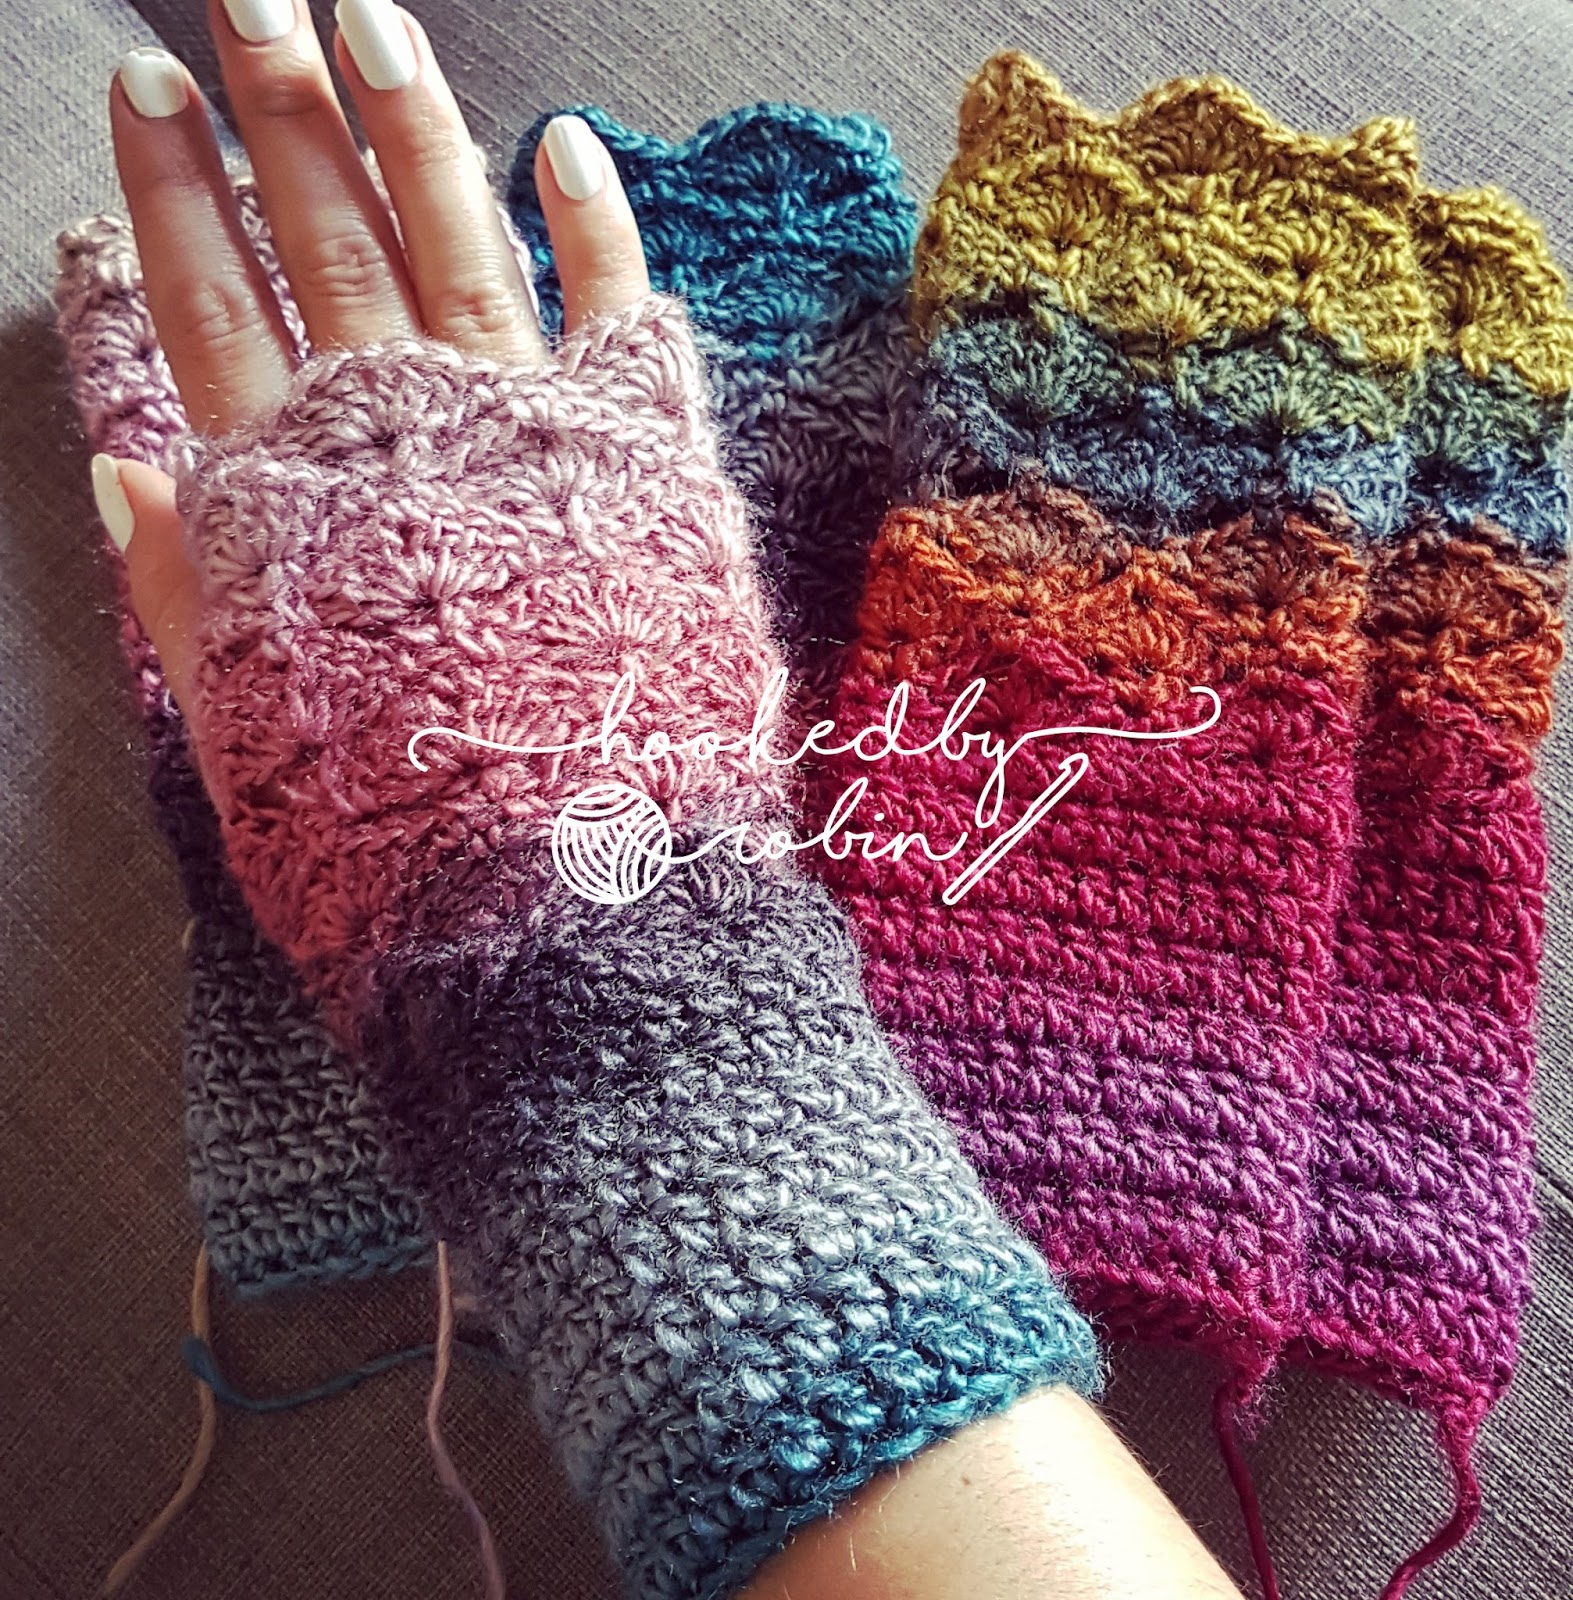 Crochet Wrist Warmers Free Pattern Fantail Shell Stitch Fingerless Gloves Free Crochet Pattern